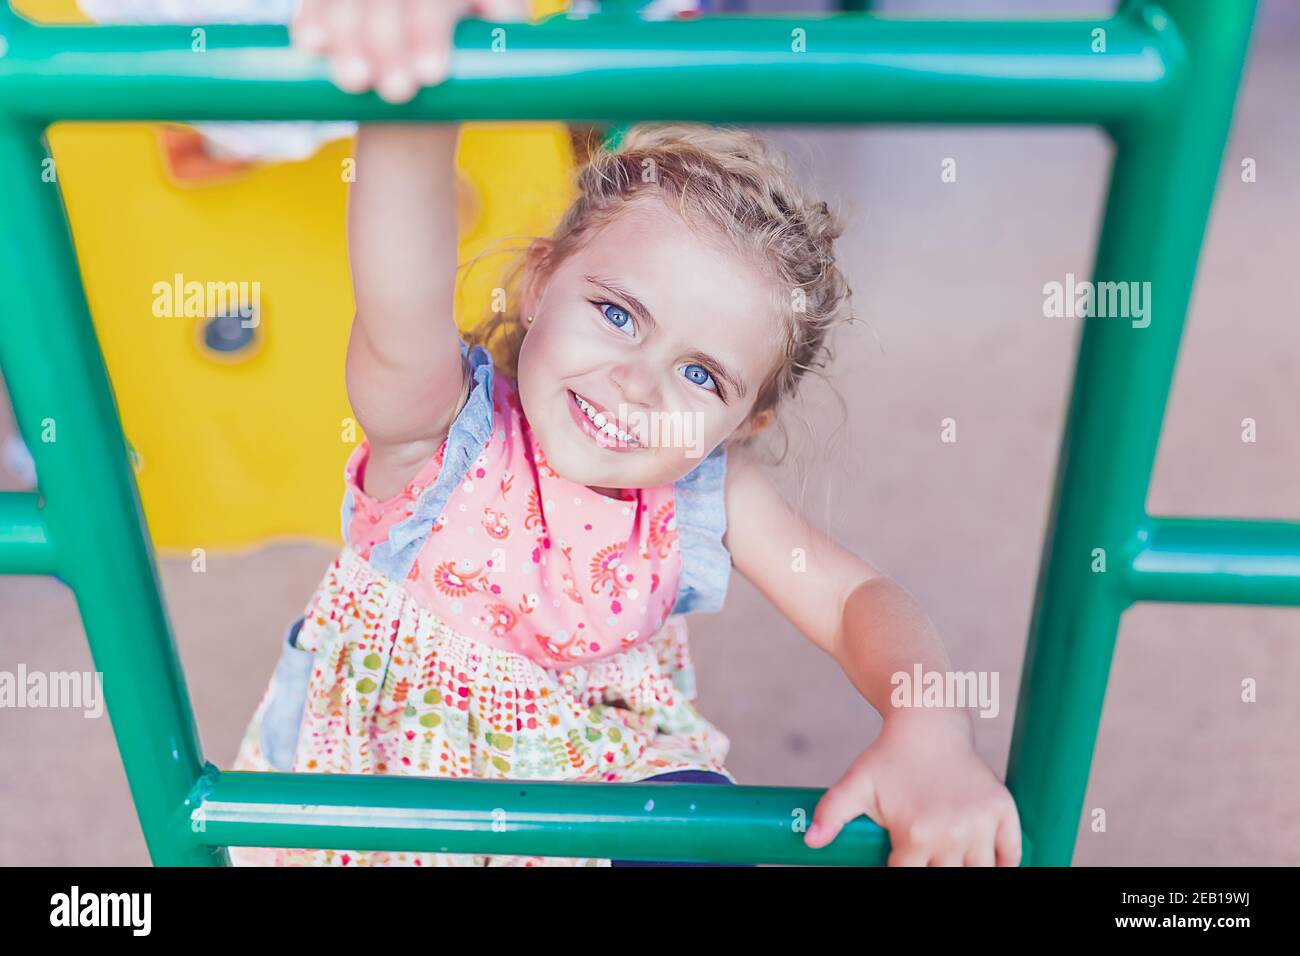 Jeune fille avec de grands yeux bleus jouant sur une aire de jeux publique. Banque D'Images